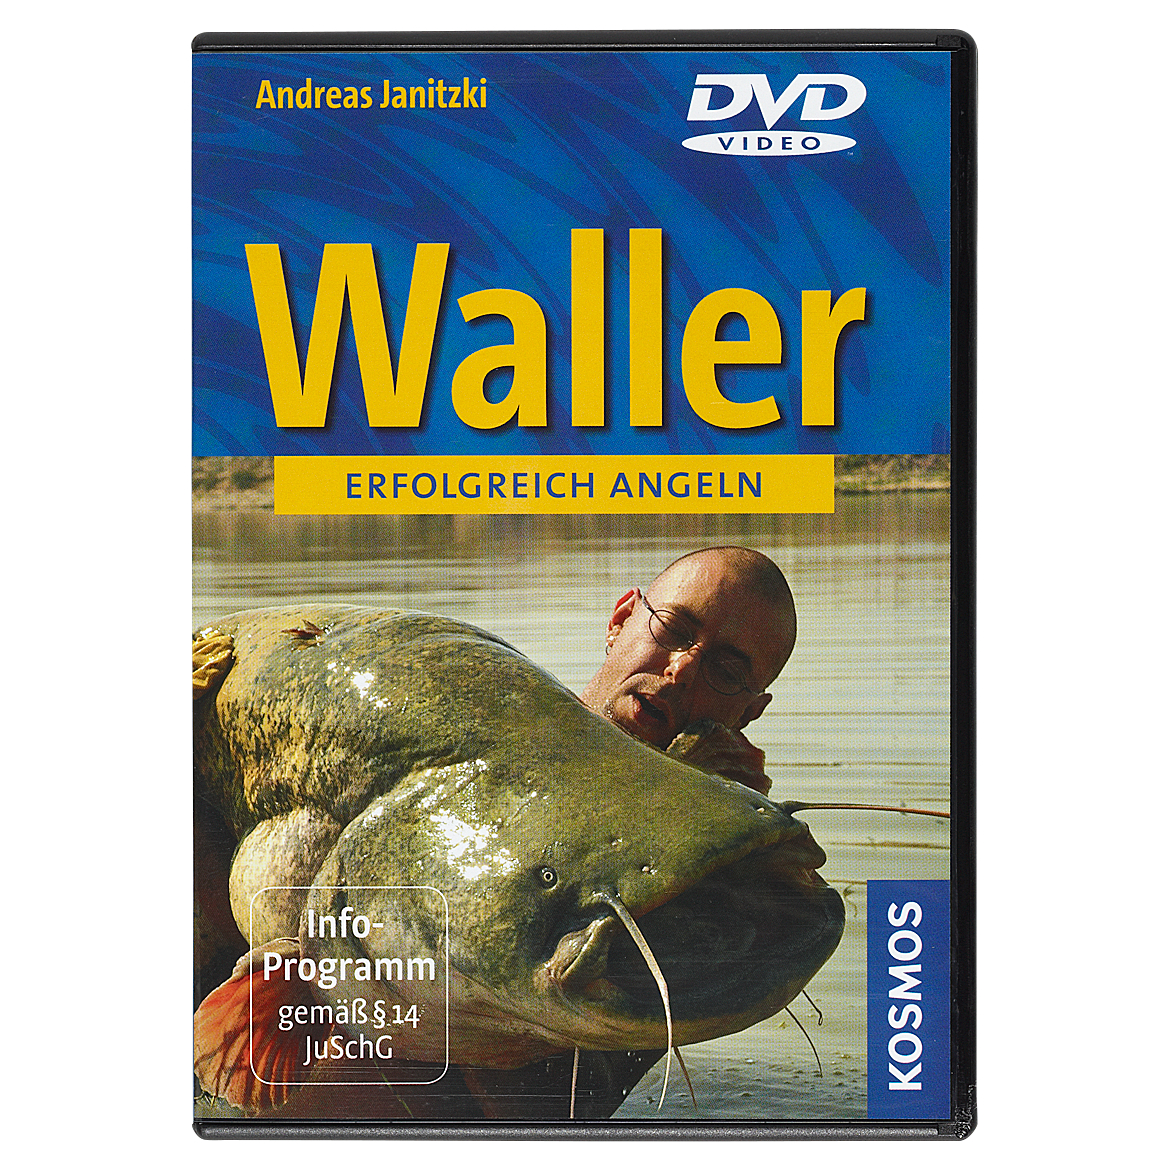 DVD Waller erfolgreich angeln von Andreas Janitzki 